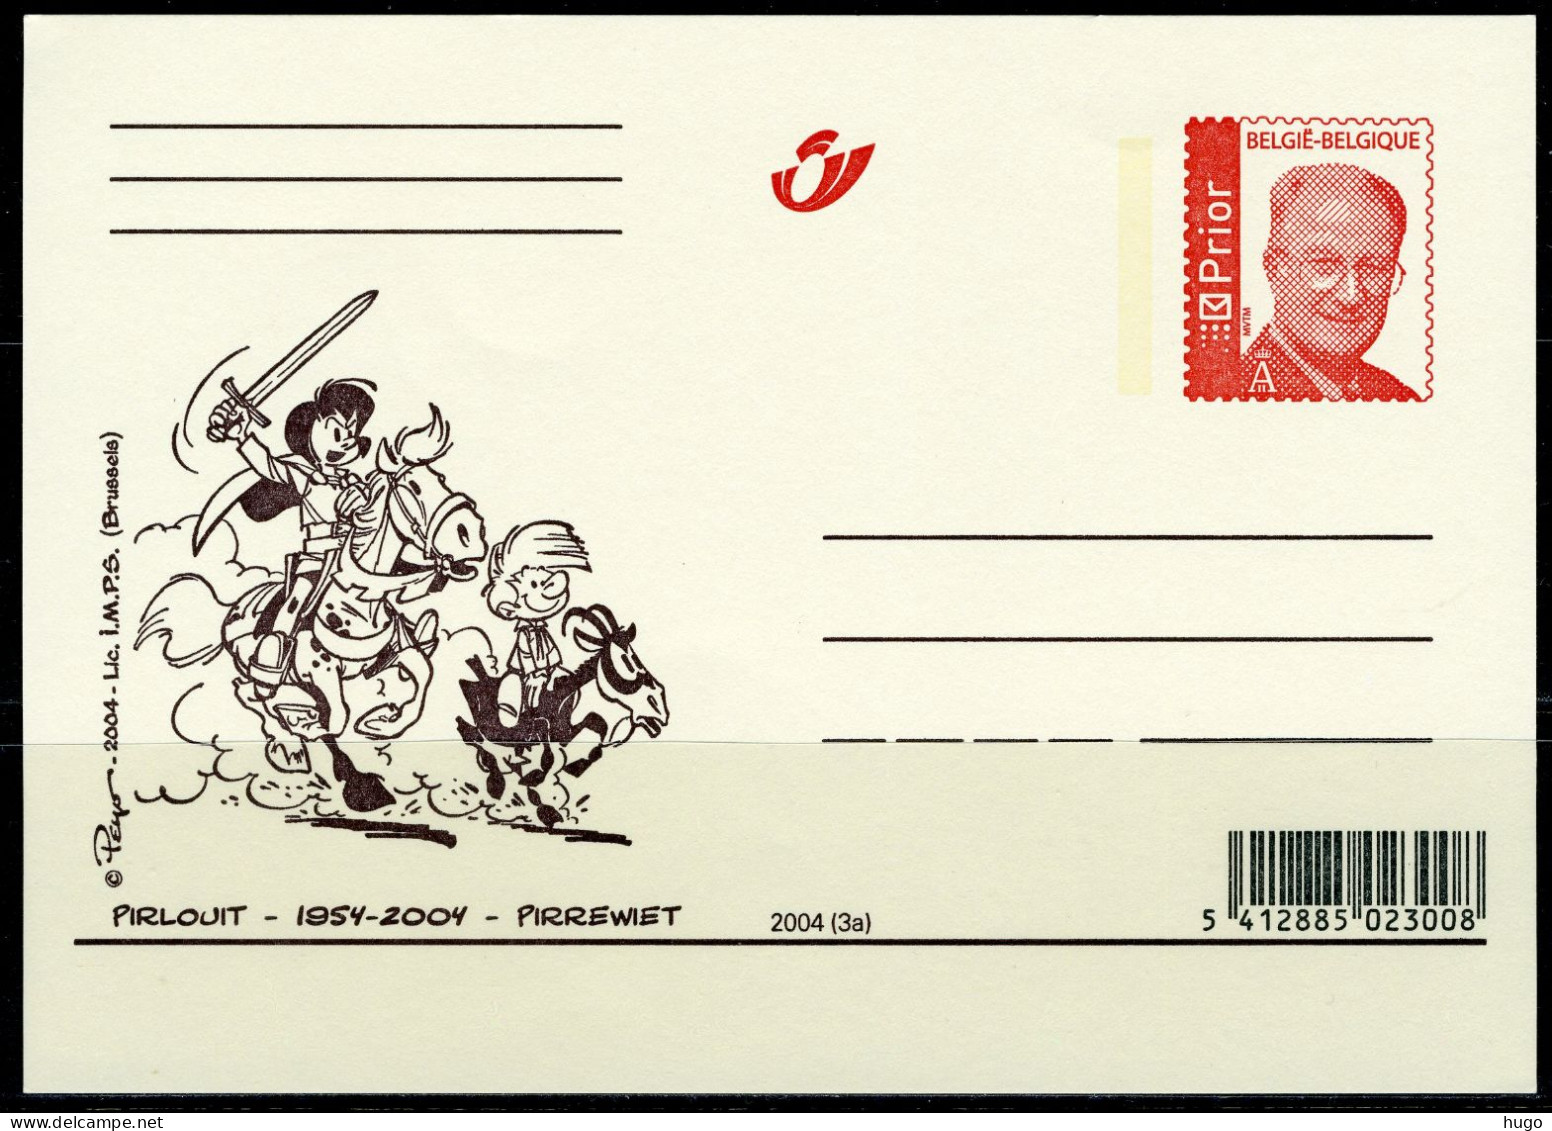 (B) België Briefkaart  2004(3a) - Pirlouit-1954-2004-Pirrewiet - Illustrierte Postkarten (1971-2014) [BK]